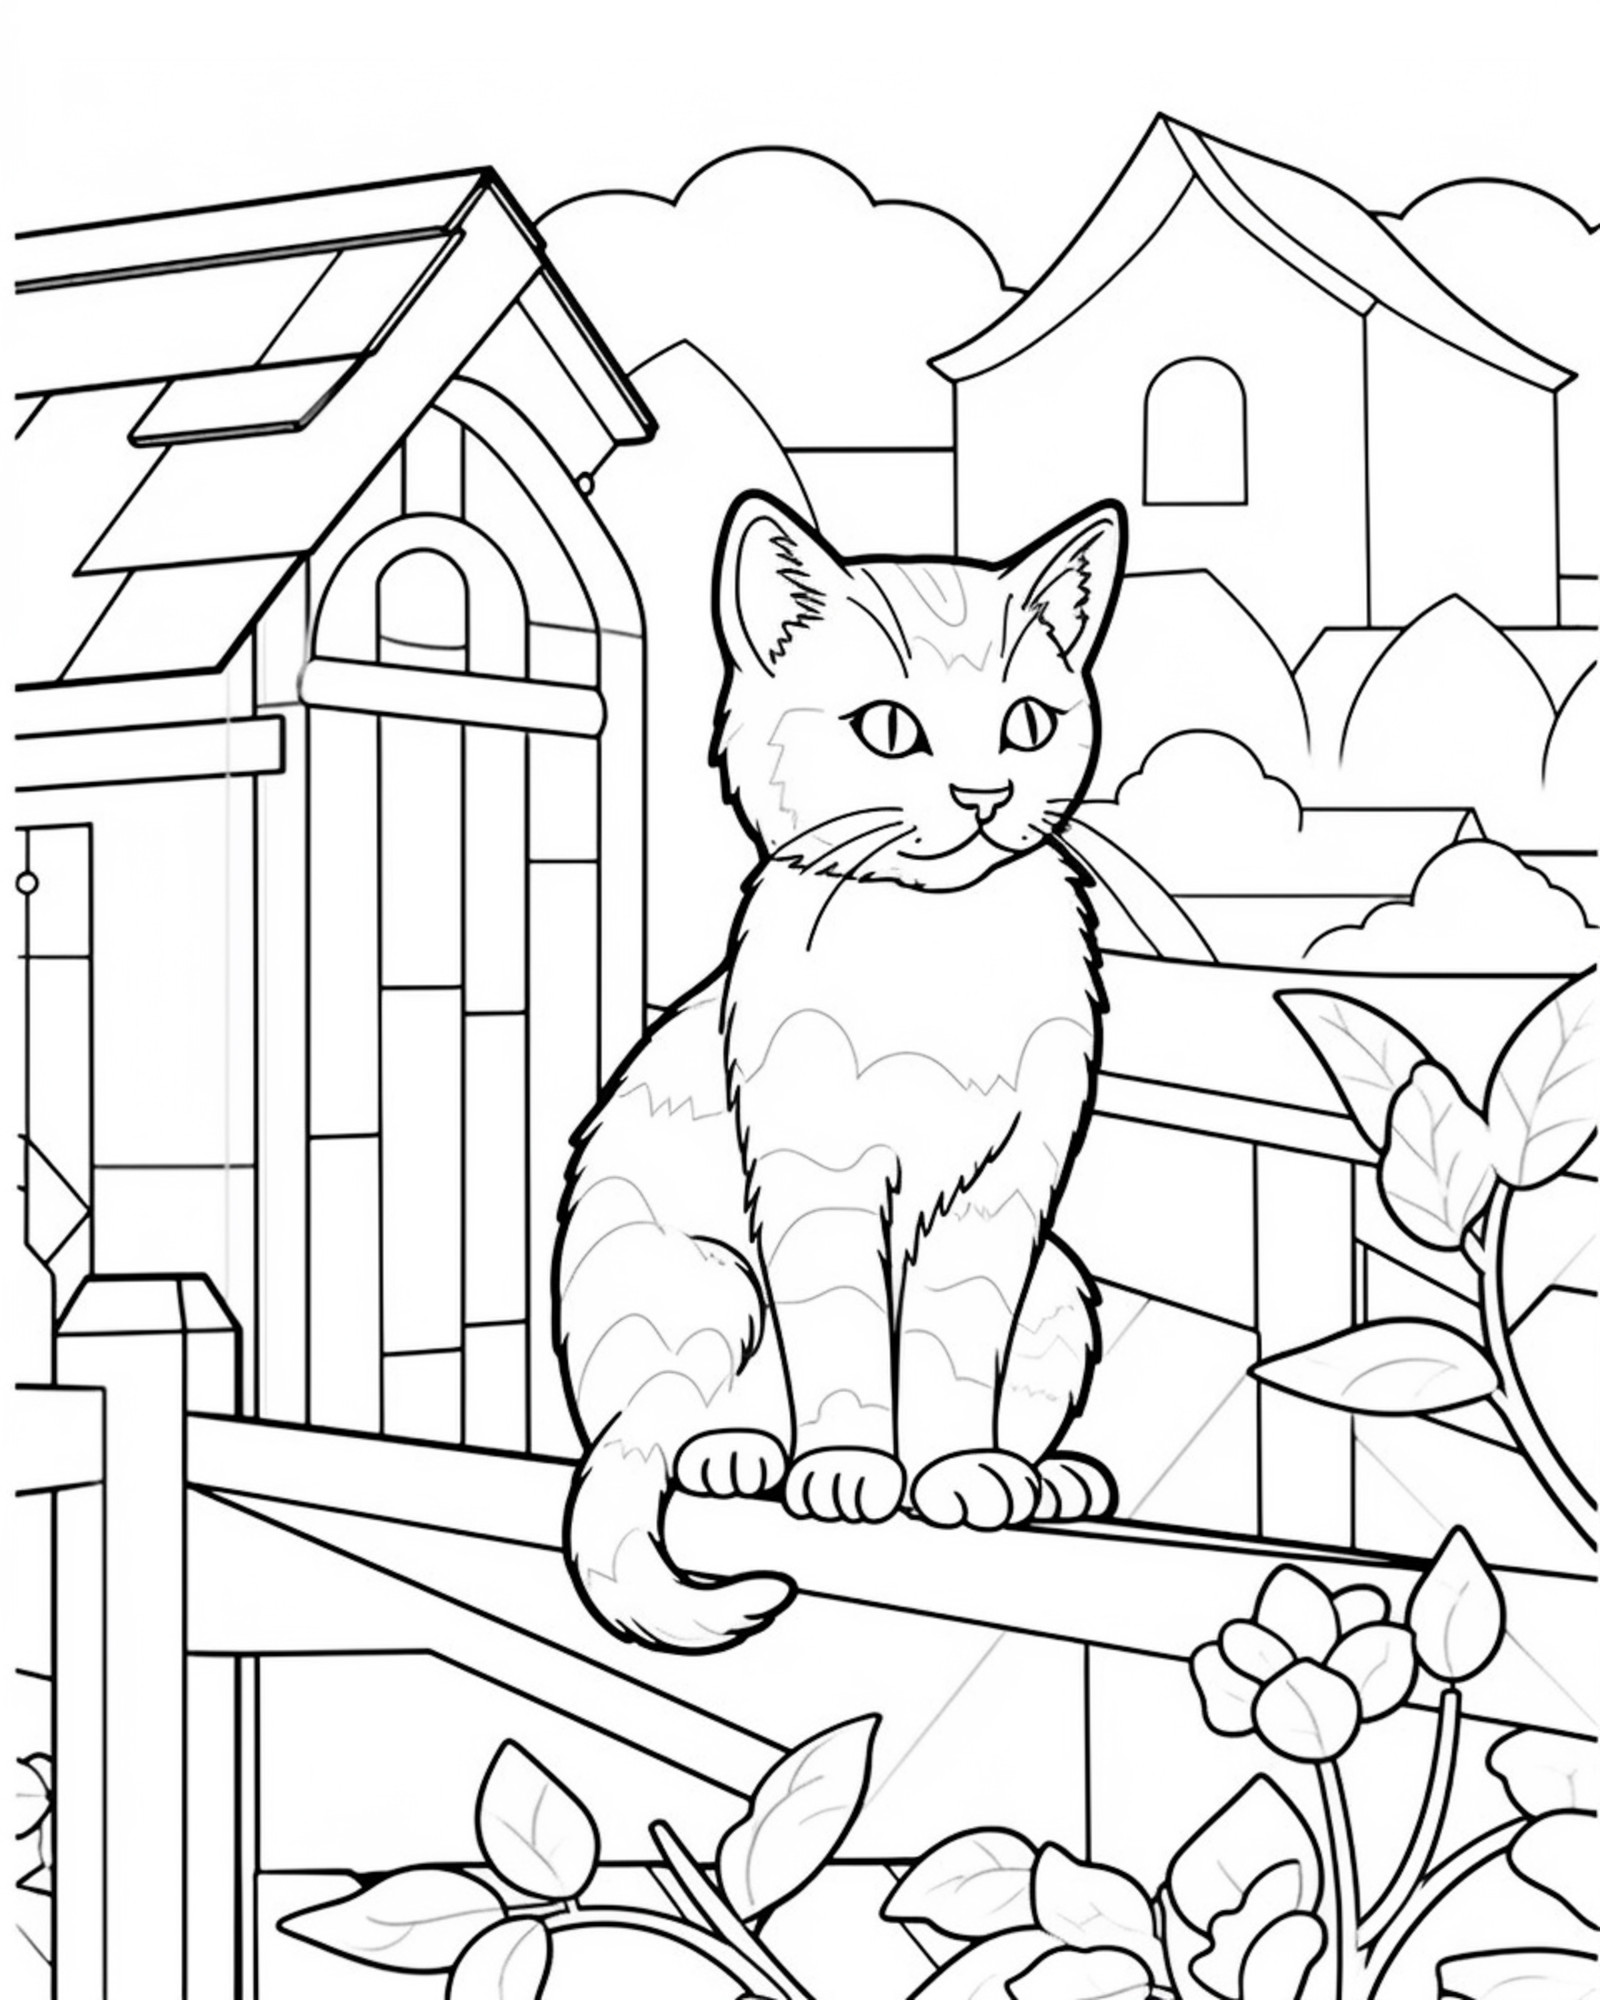 Раскраска для детей: кот сидит на заборе в саду